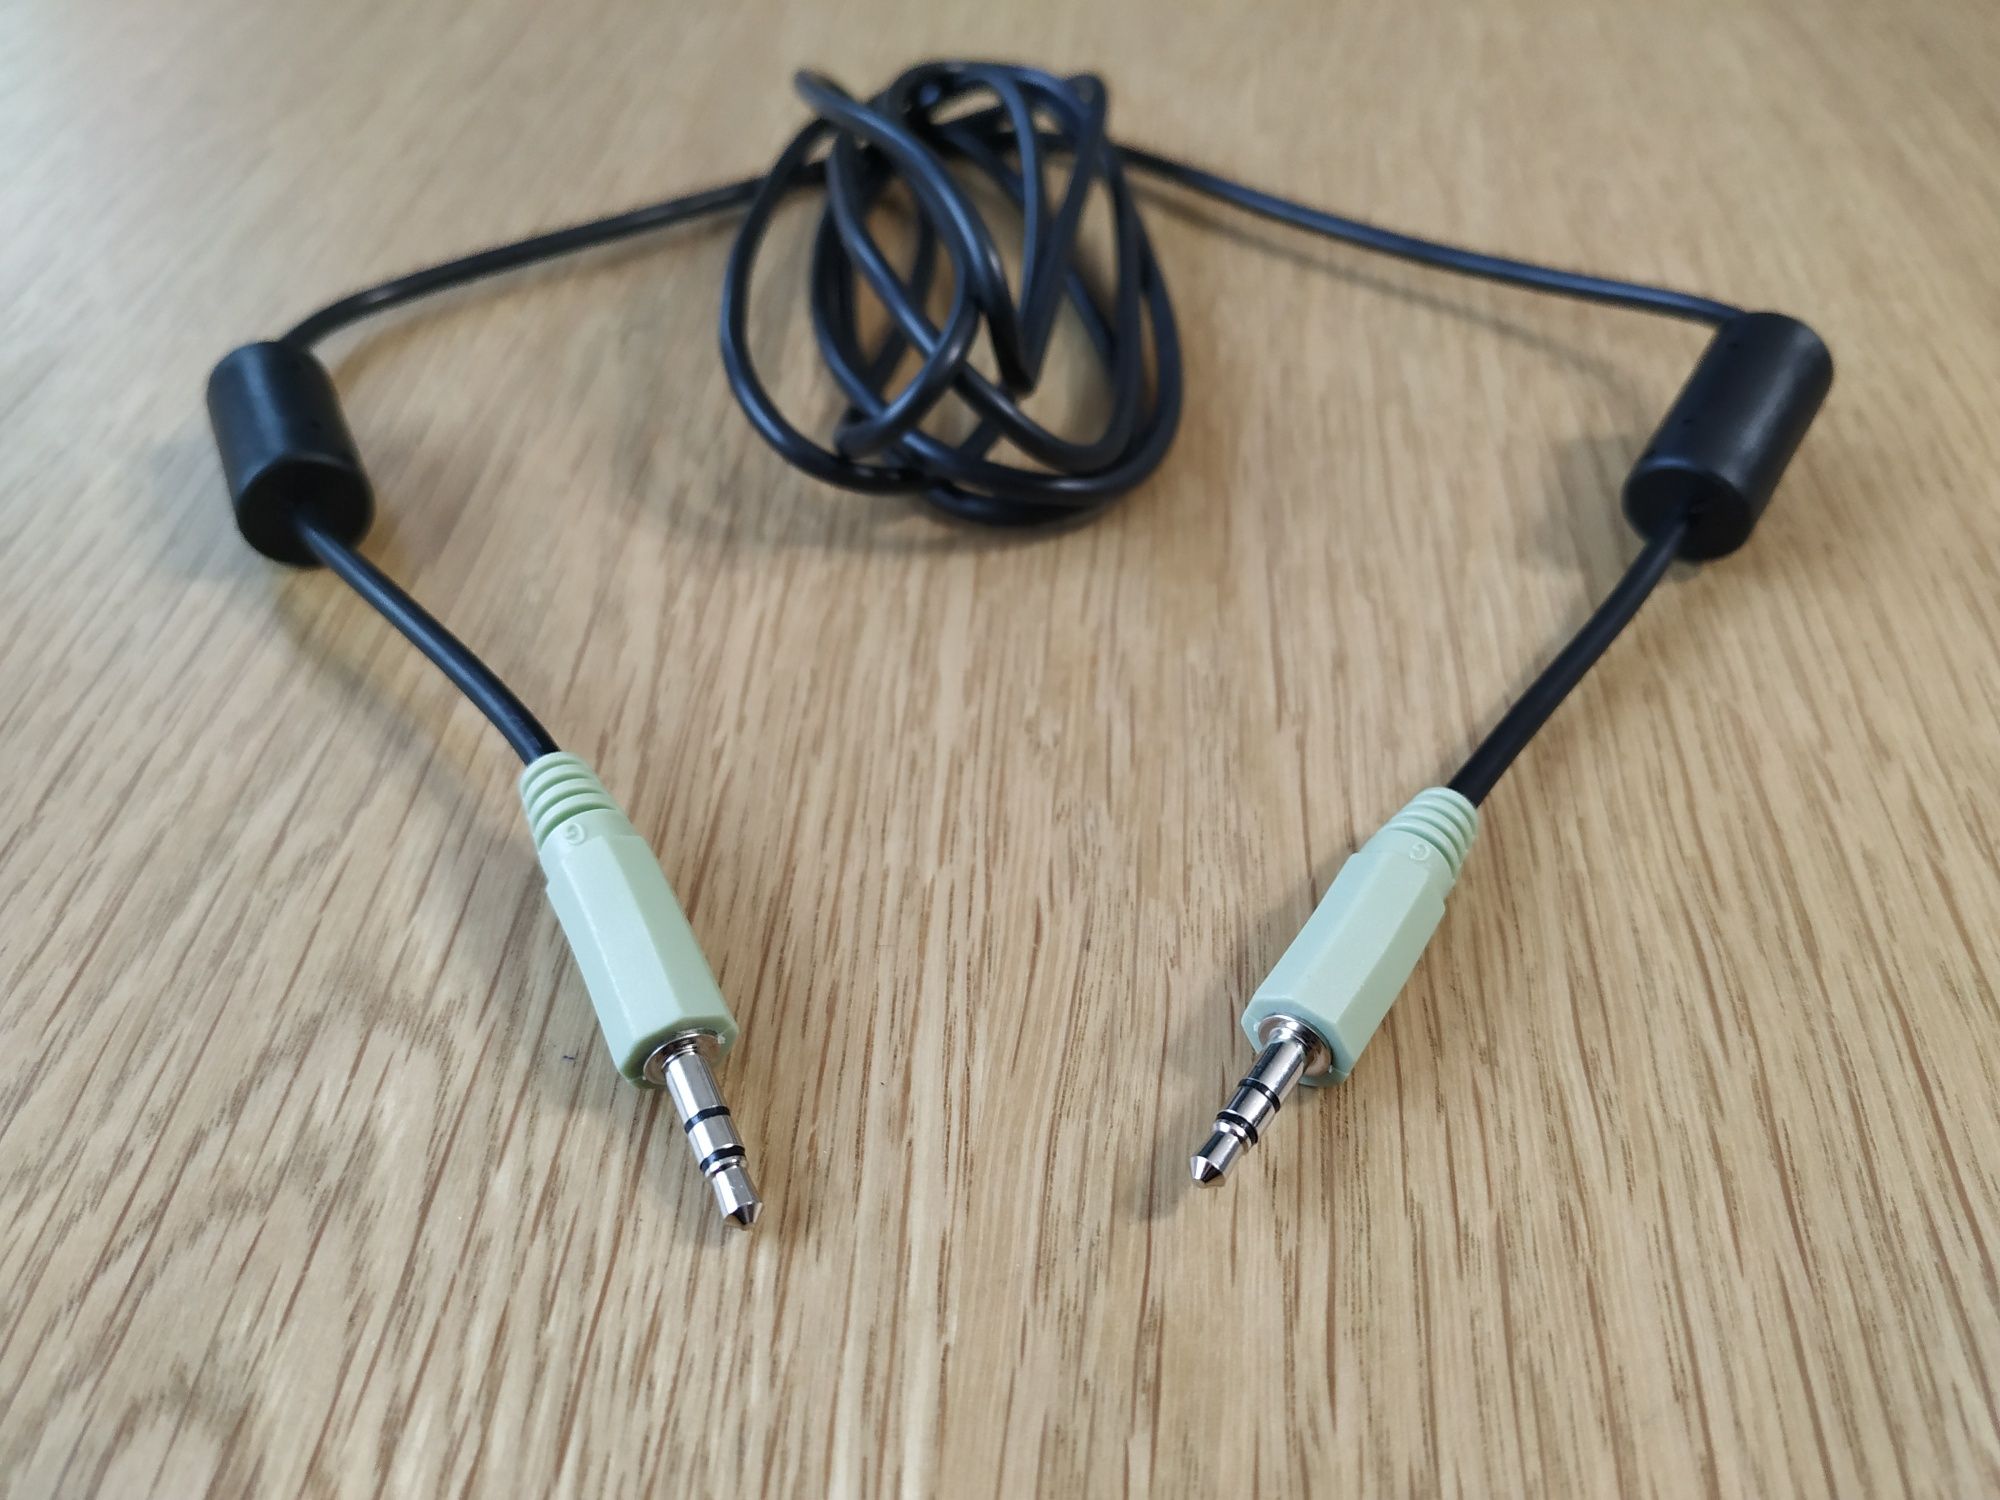 Cablu audio, jack 3.5 mm la jack 3.5mm, 1.8 m